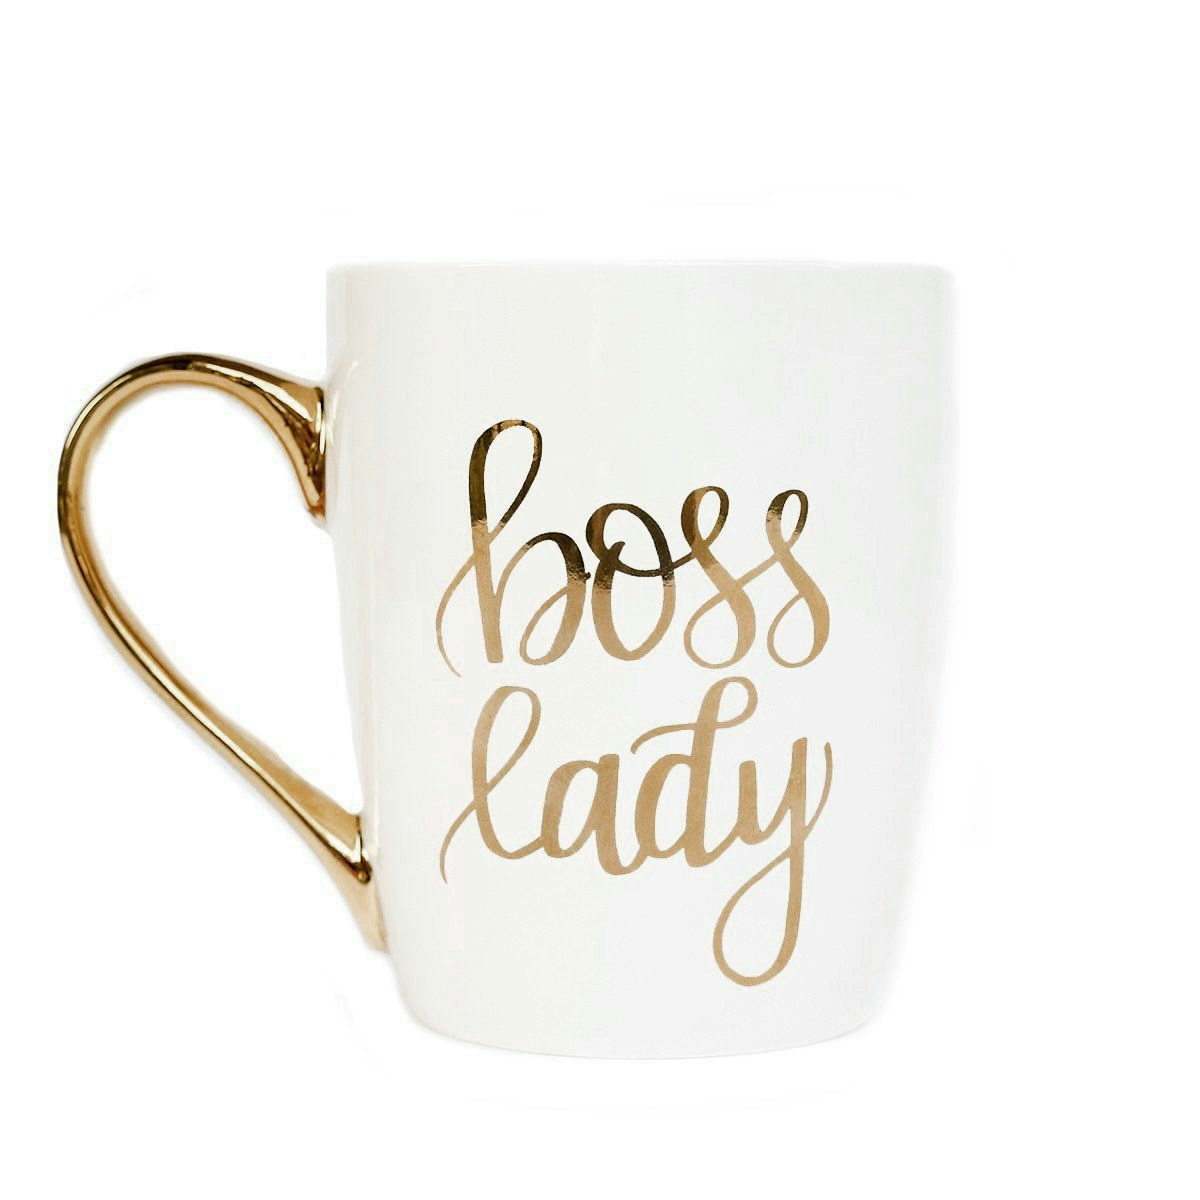 farewell gift for female boss